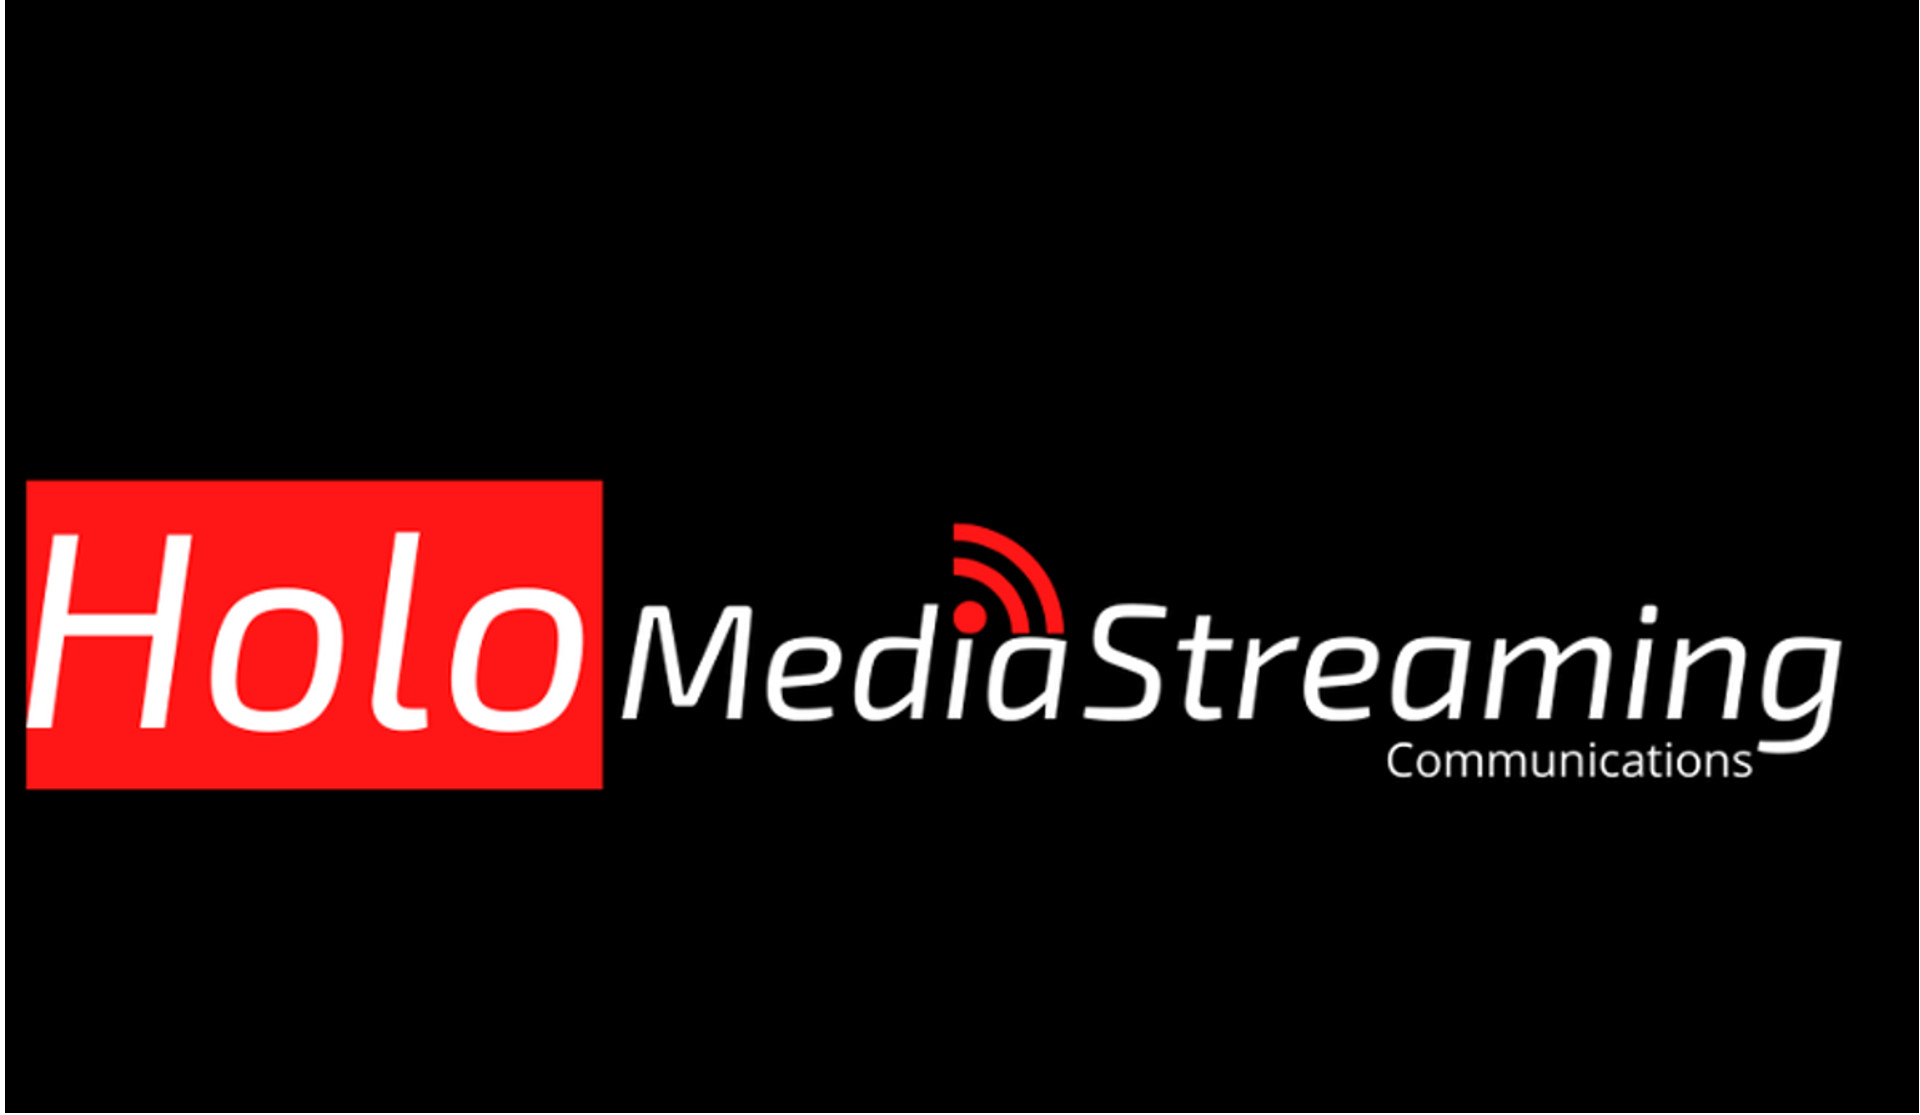 Holo Media Streaming Communications - Agenzia di Comunicazione Audiovisiva di Palermo